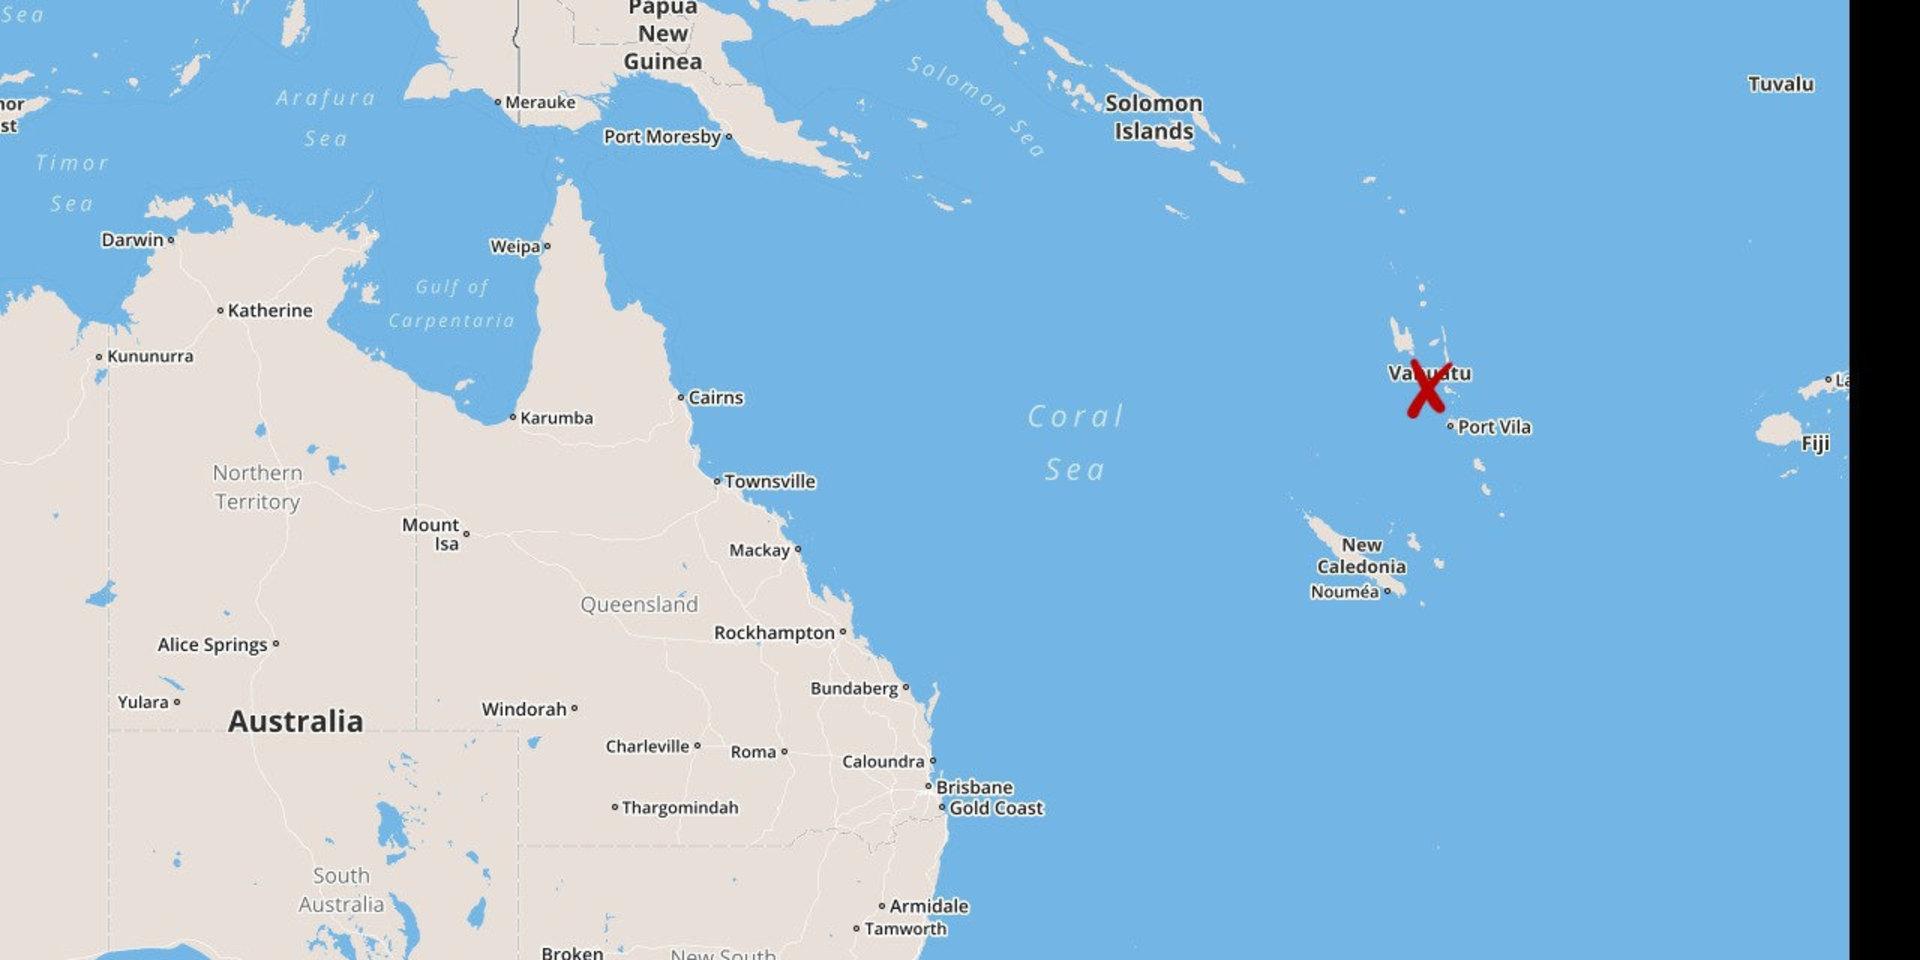 Orkanen Harold har nått Vanuatu i Stila havet.